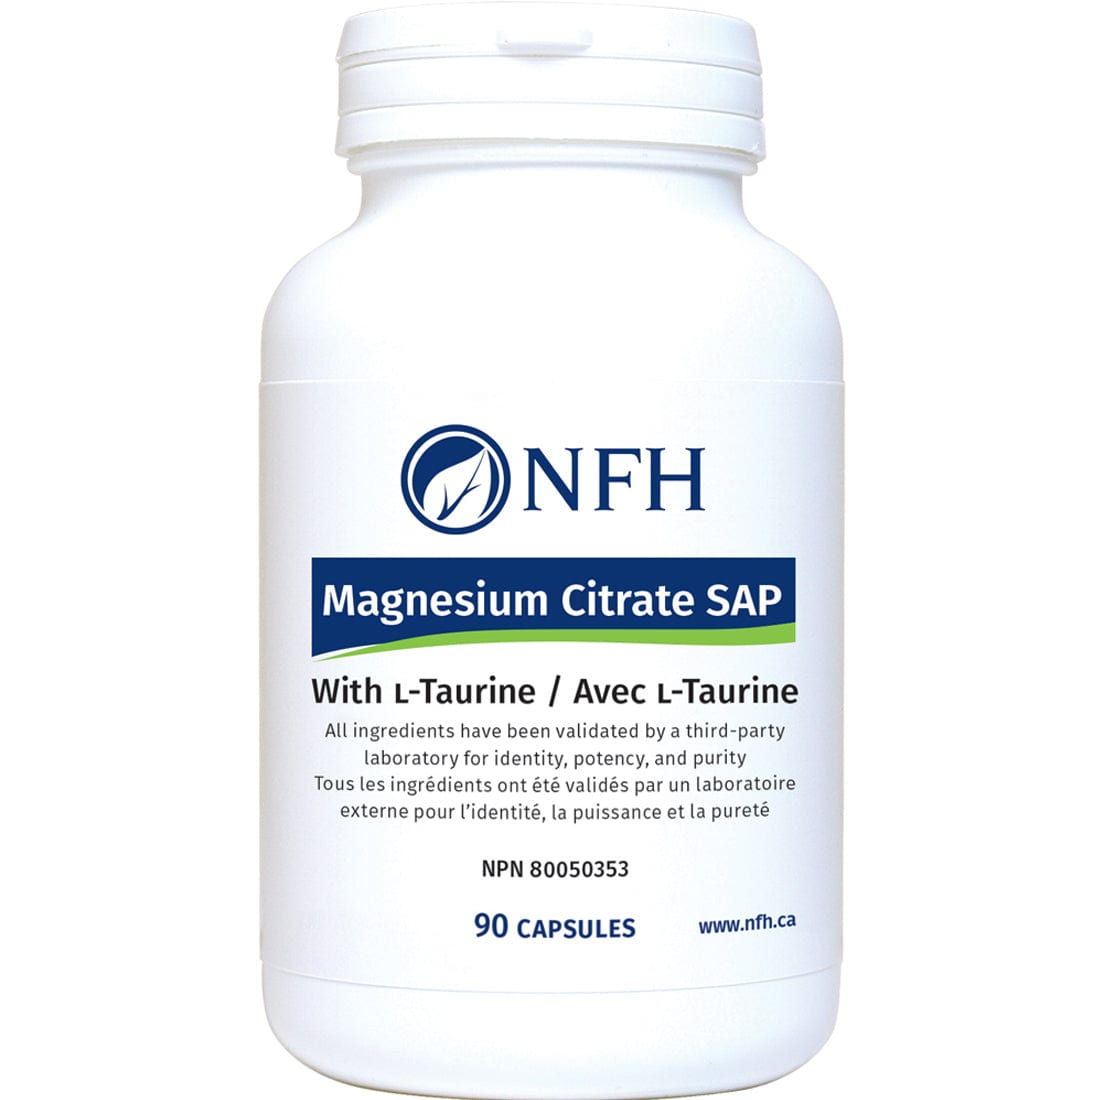 NFH Magnesium Citrate SAP, 90 Capsules